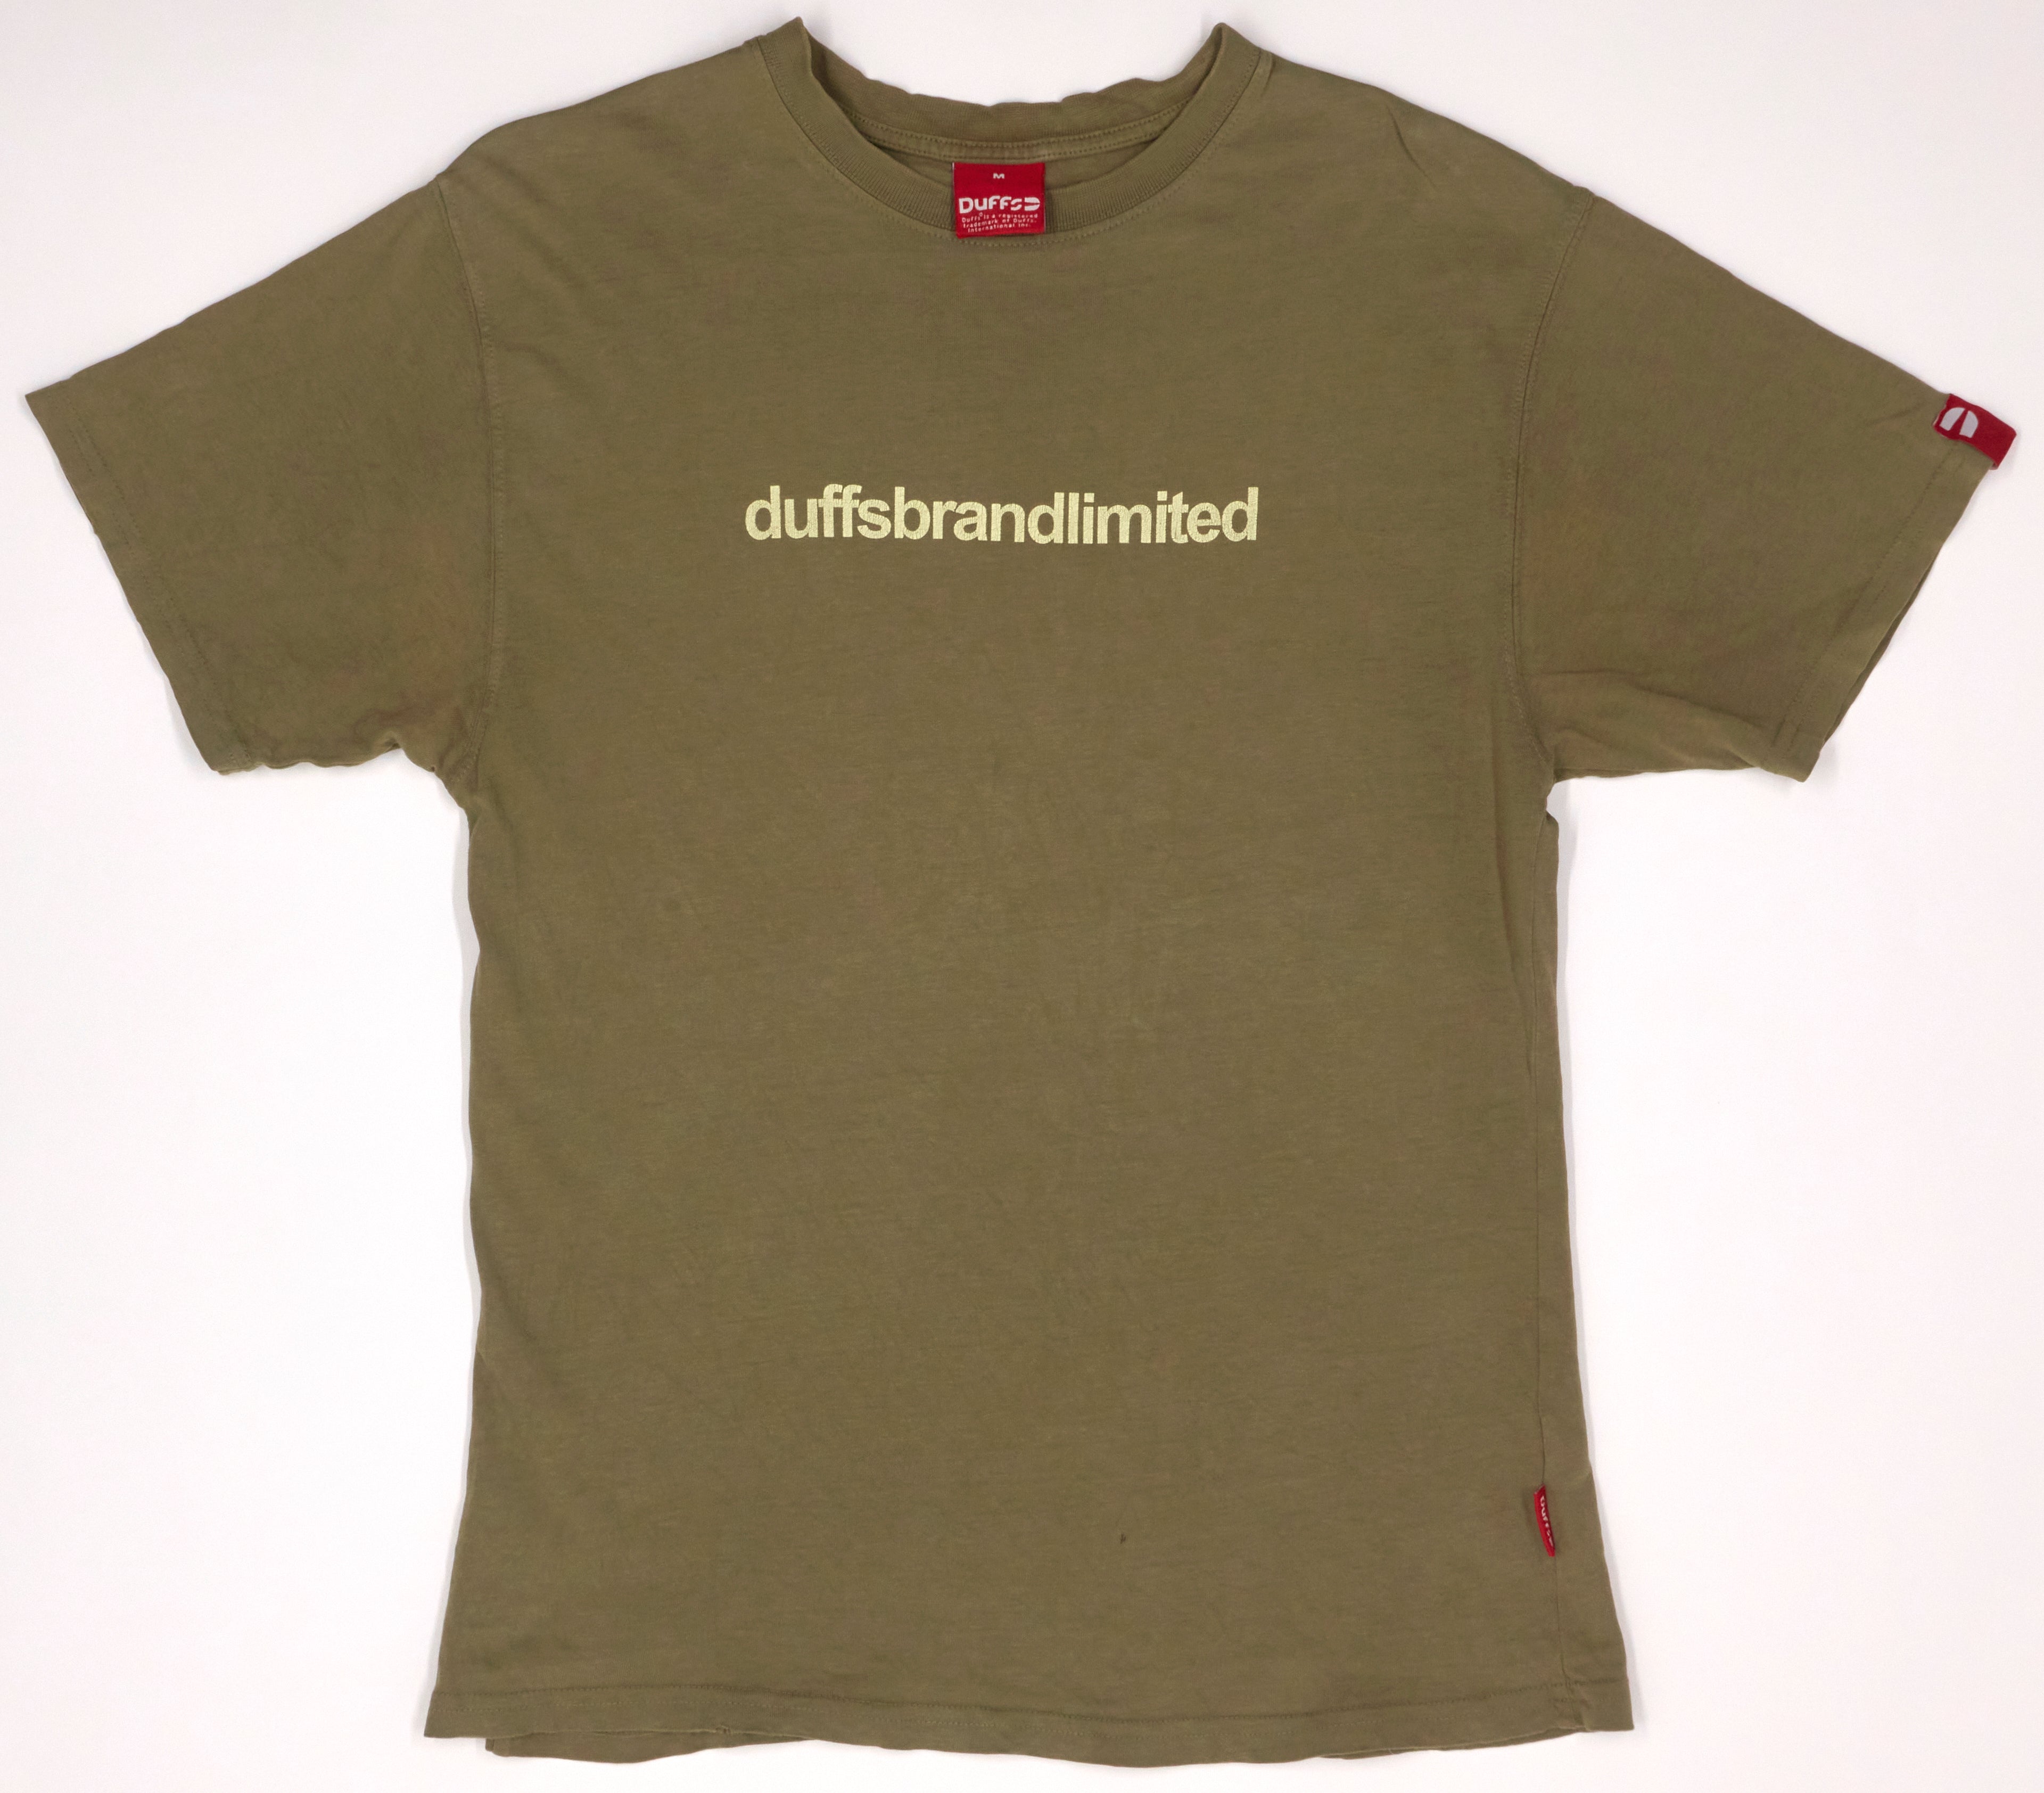 Duffs - Duffs Brand Limited 90's Shirt Size Medium